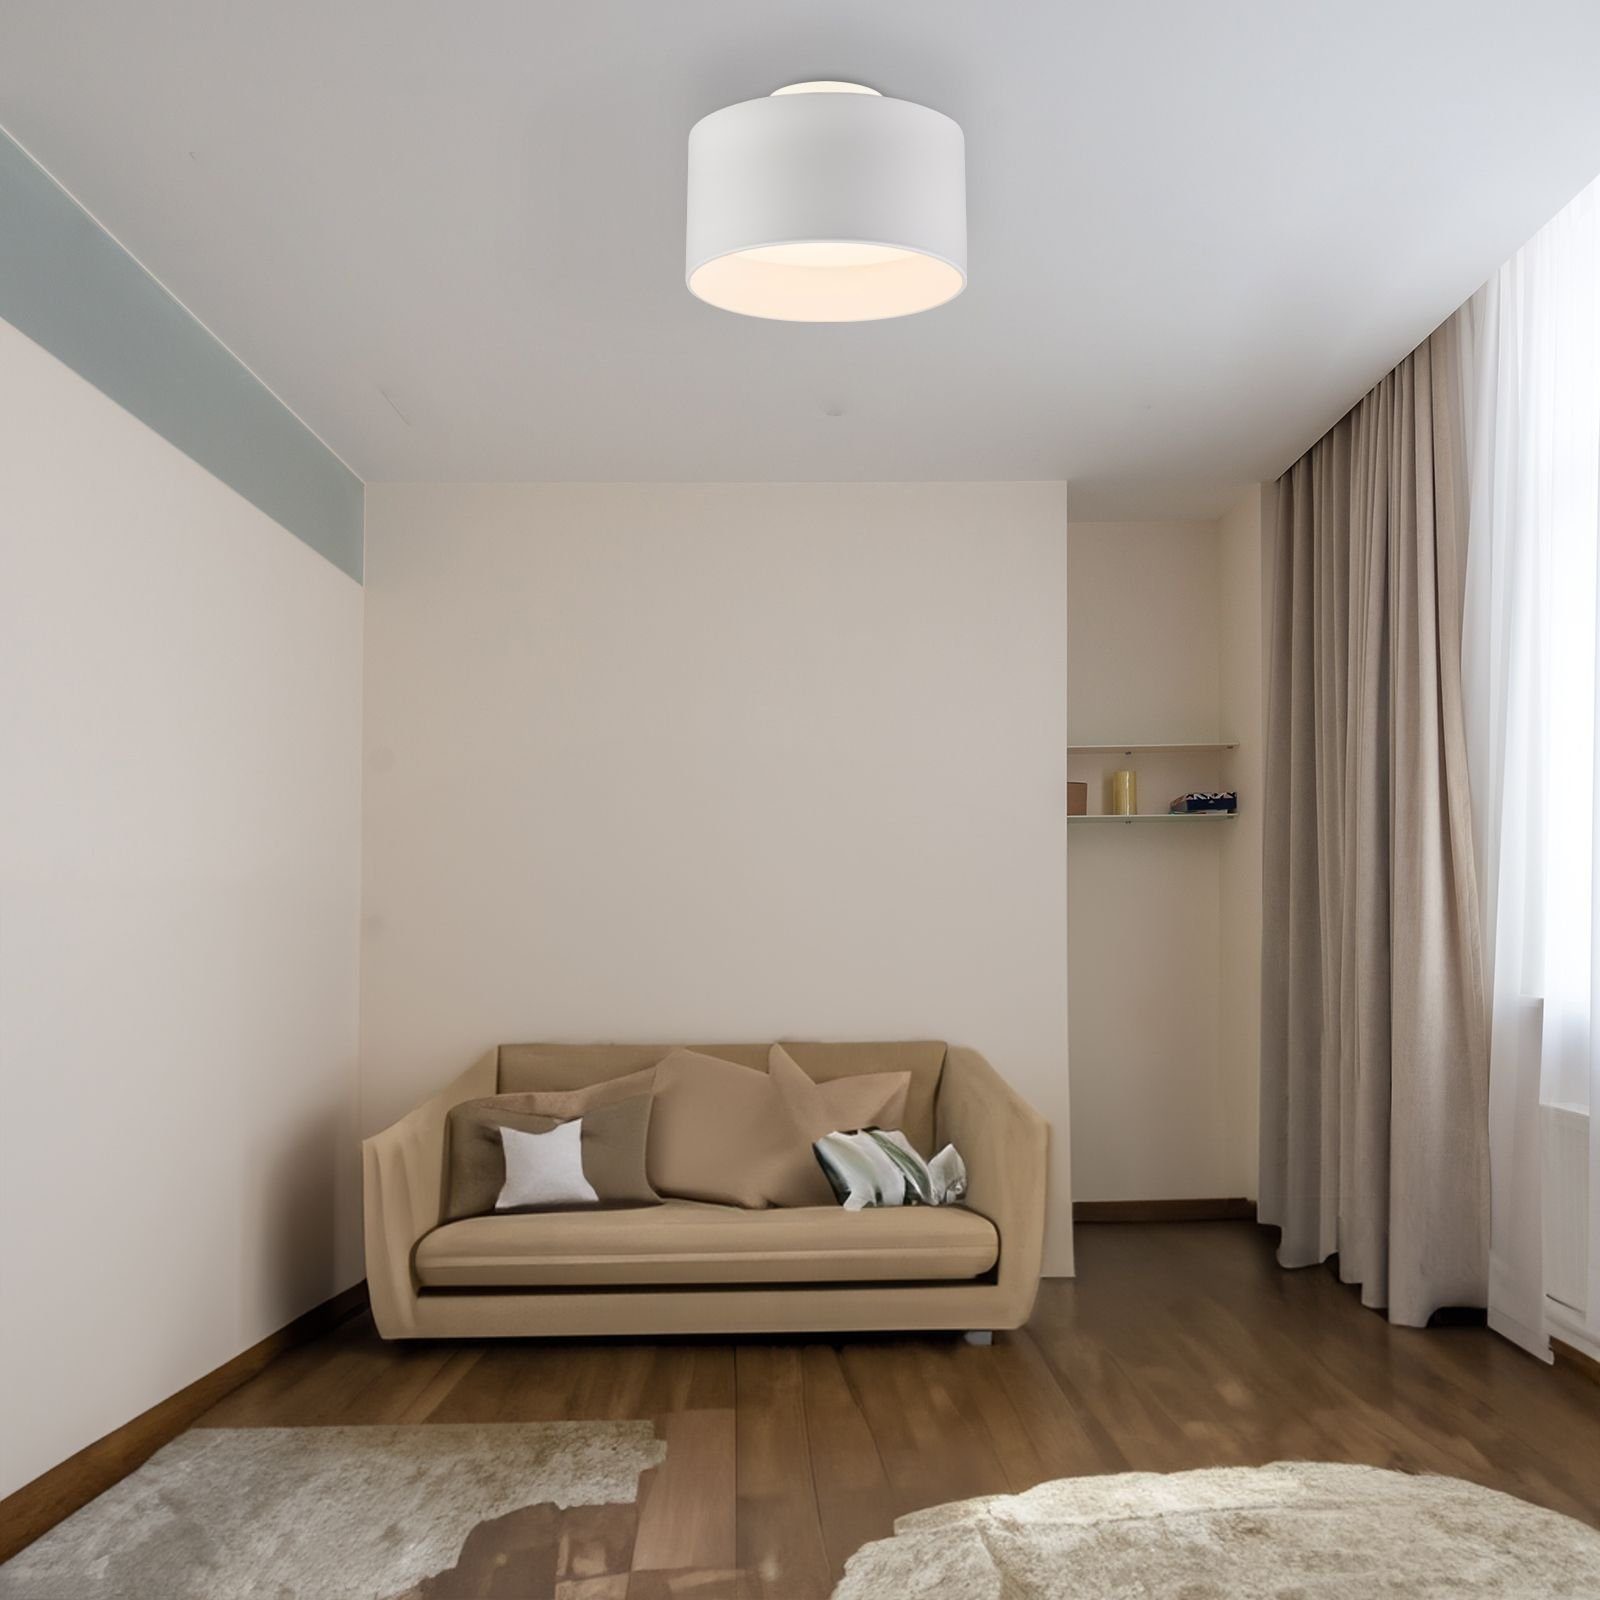 Globo Deckenleuchte LED, Wohnzimmer, modern, Deckenleuchte Schlafzimmer Küche integriert, Backlight, Esszimmer, Flur Warmweiß Warmweiß, GLOBO weiß, fest LED Deckenlampe